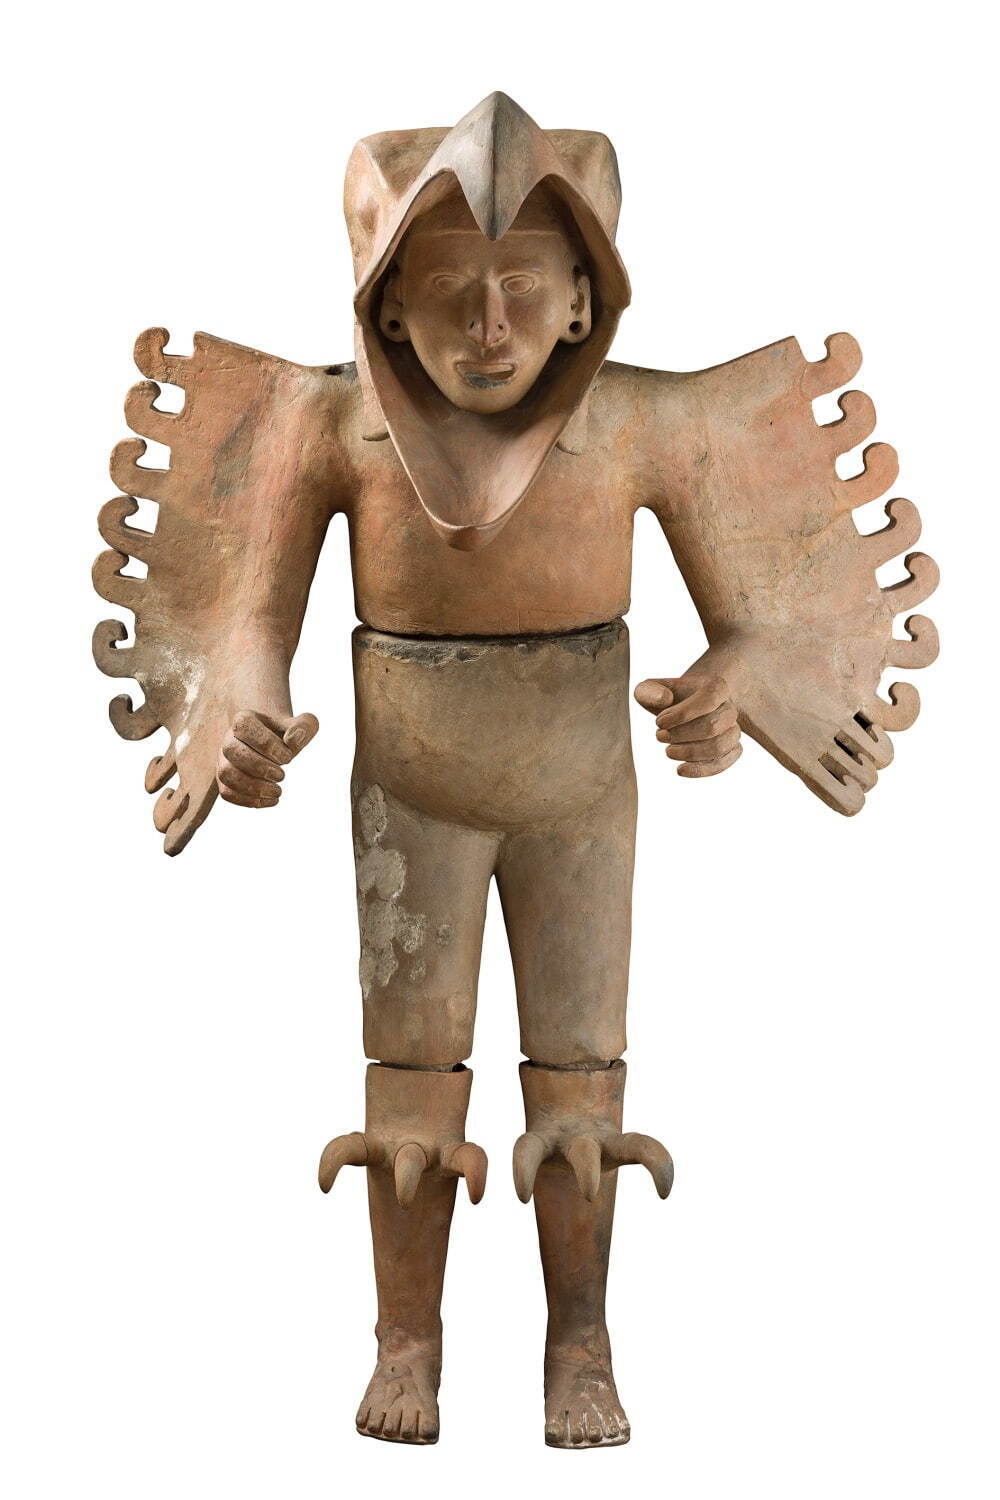 鷲の戦士像 アステカ文明 1469-86年
テンプロ・マヨール、鷲の家出土 テンプロ・マヨール博物館蔵
©Secretaría de Cultura-INAH-MEX. Museo del Templo Mayor